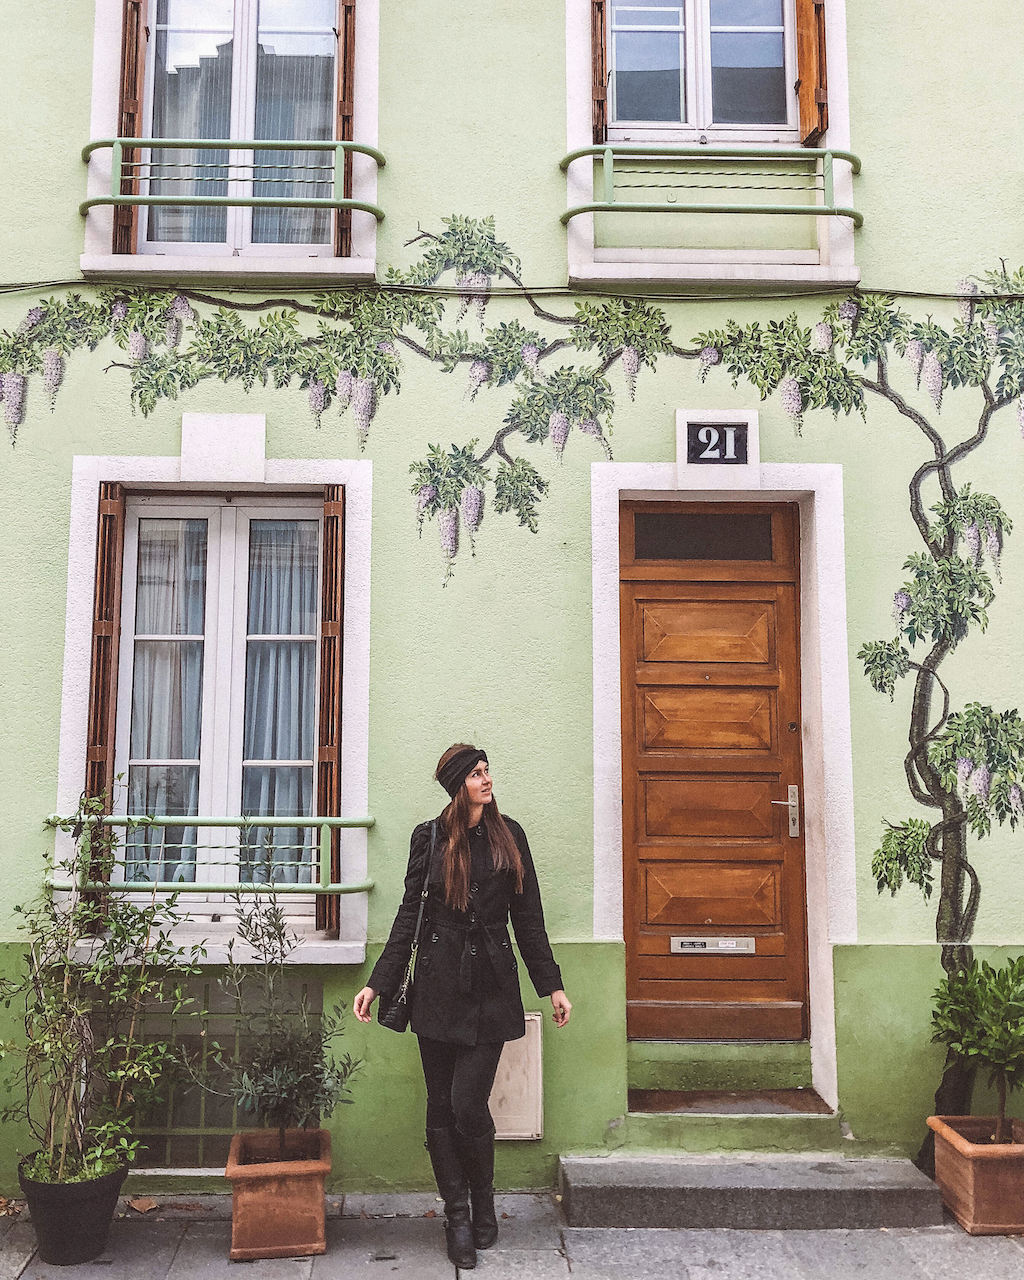 Maison verte de la rue Crémieux - Paris - France